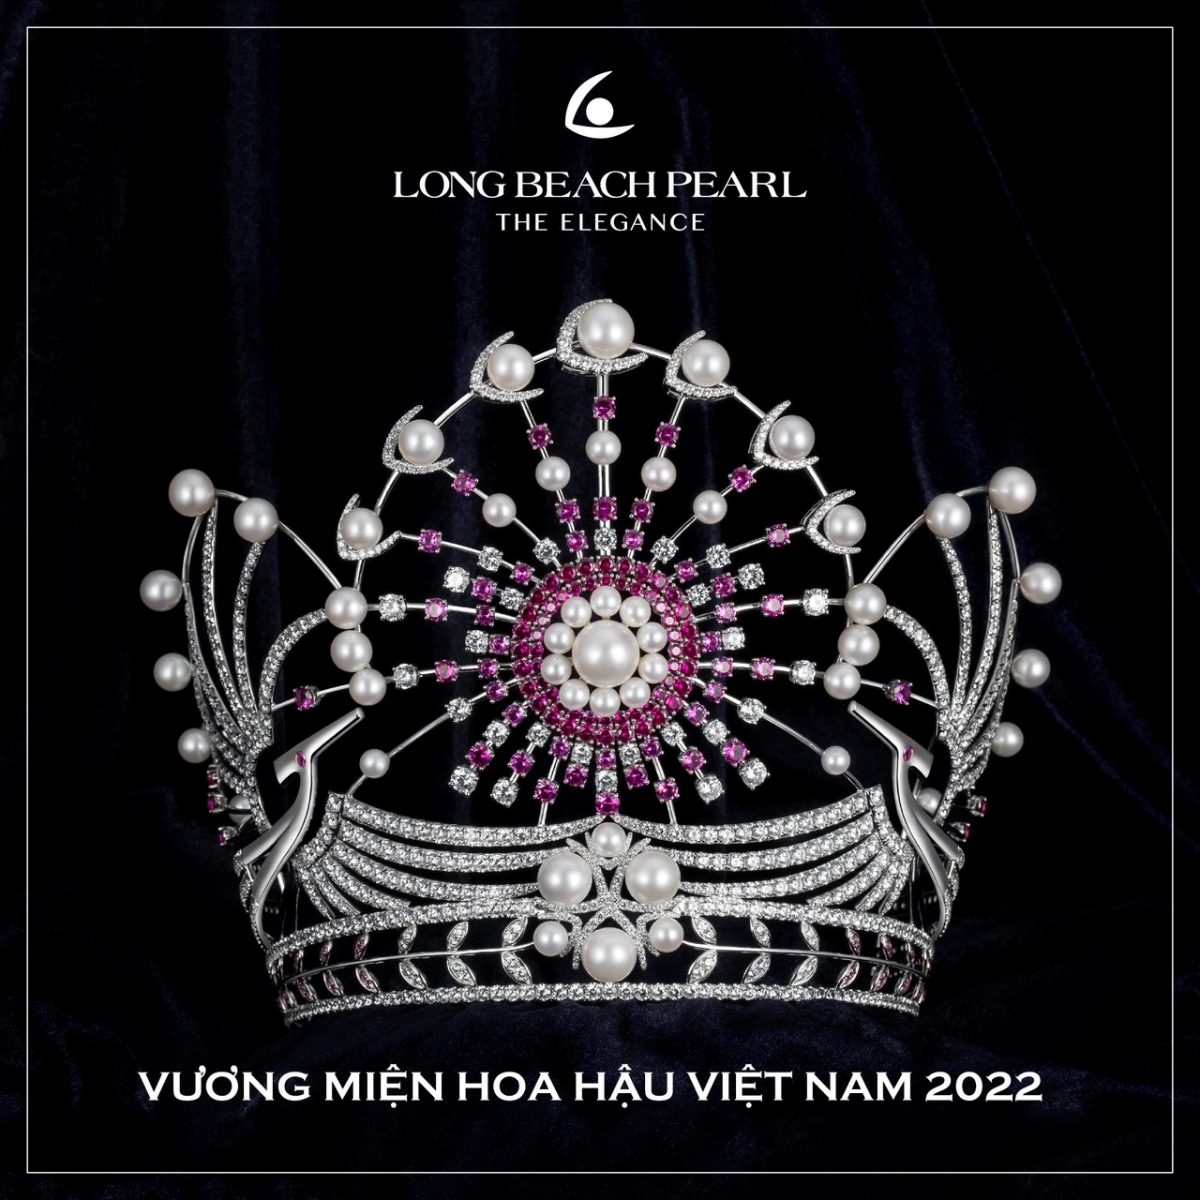 Cận cảnh tuyệt phẩm vương miện Hoa hậu Việt Nam 2022